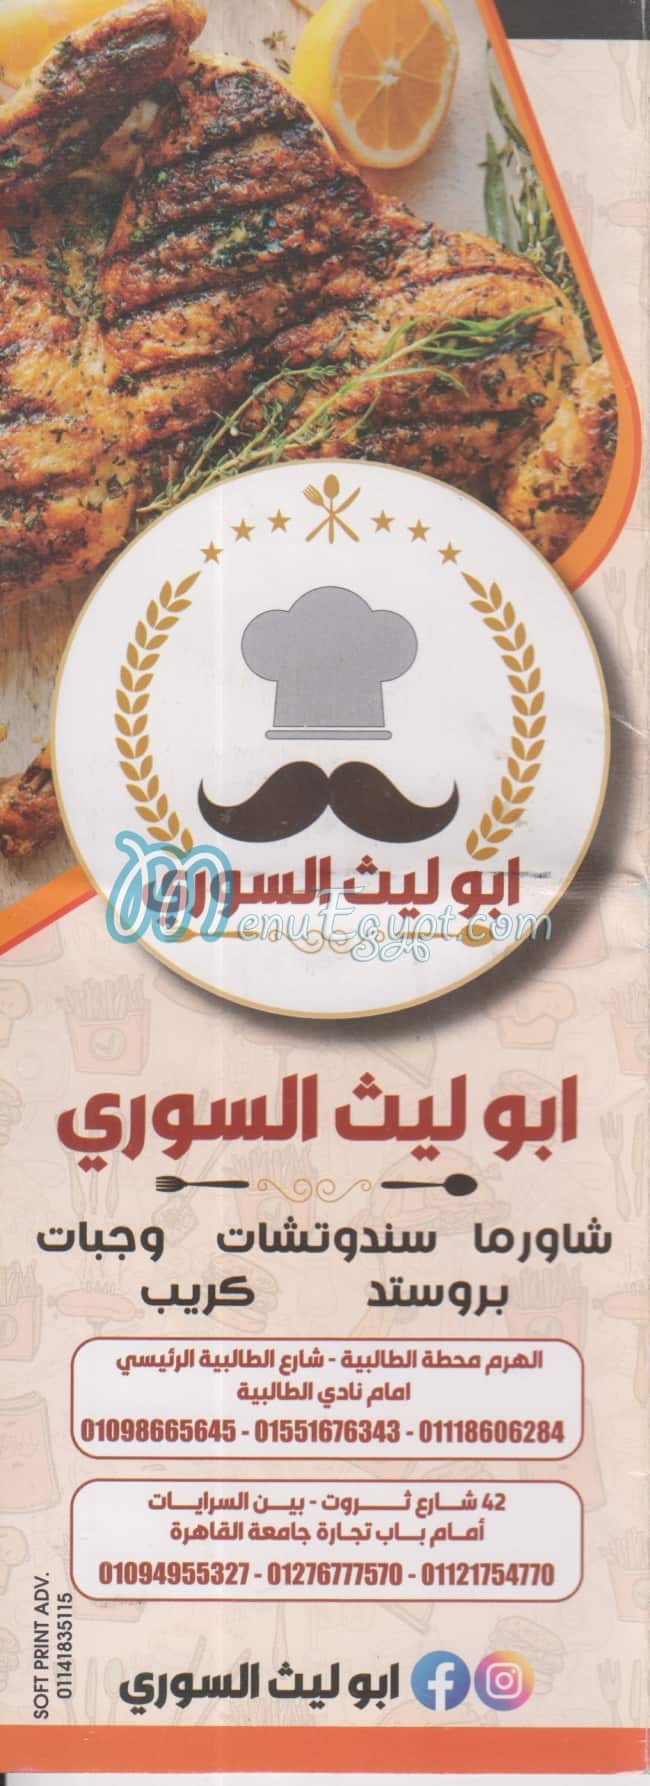 Abi Lieth El Soury Haram menu